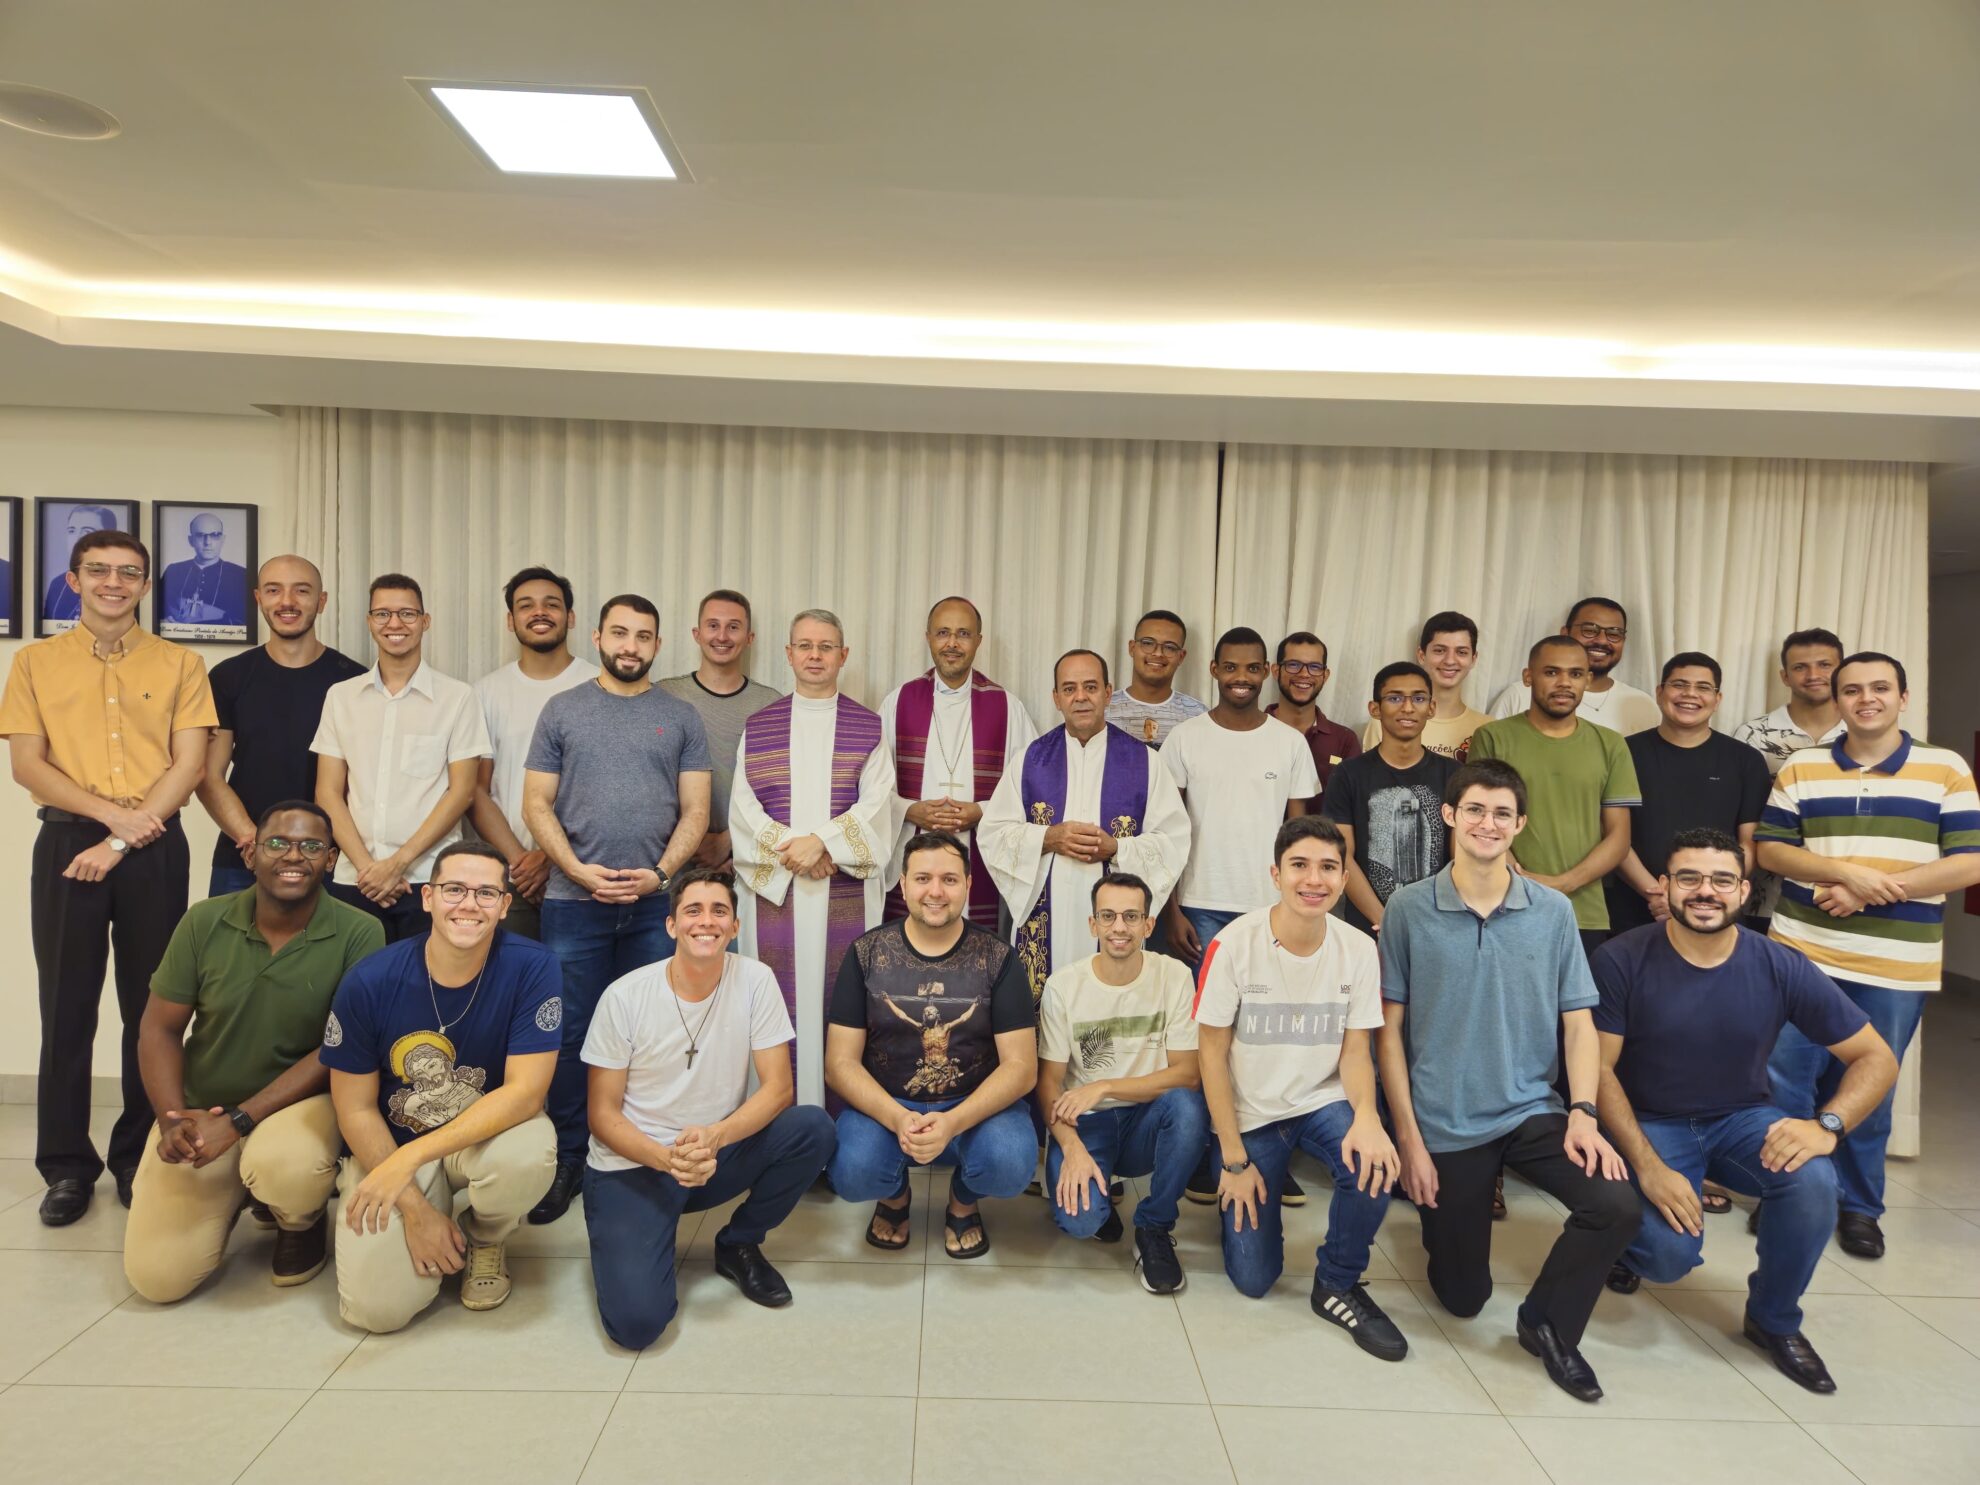 Notícia: Seminário Diocesano inicia ano formativo com celebração presidida por Dom Geovane Luís